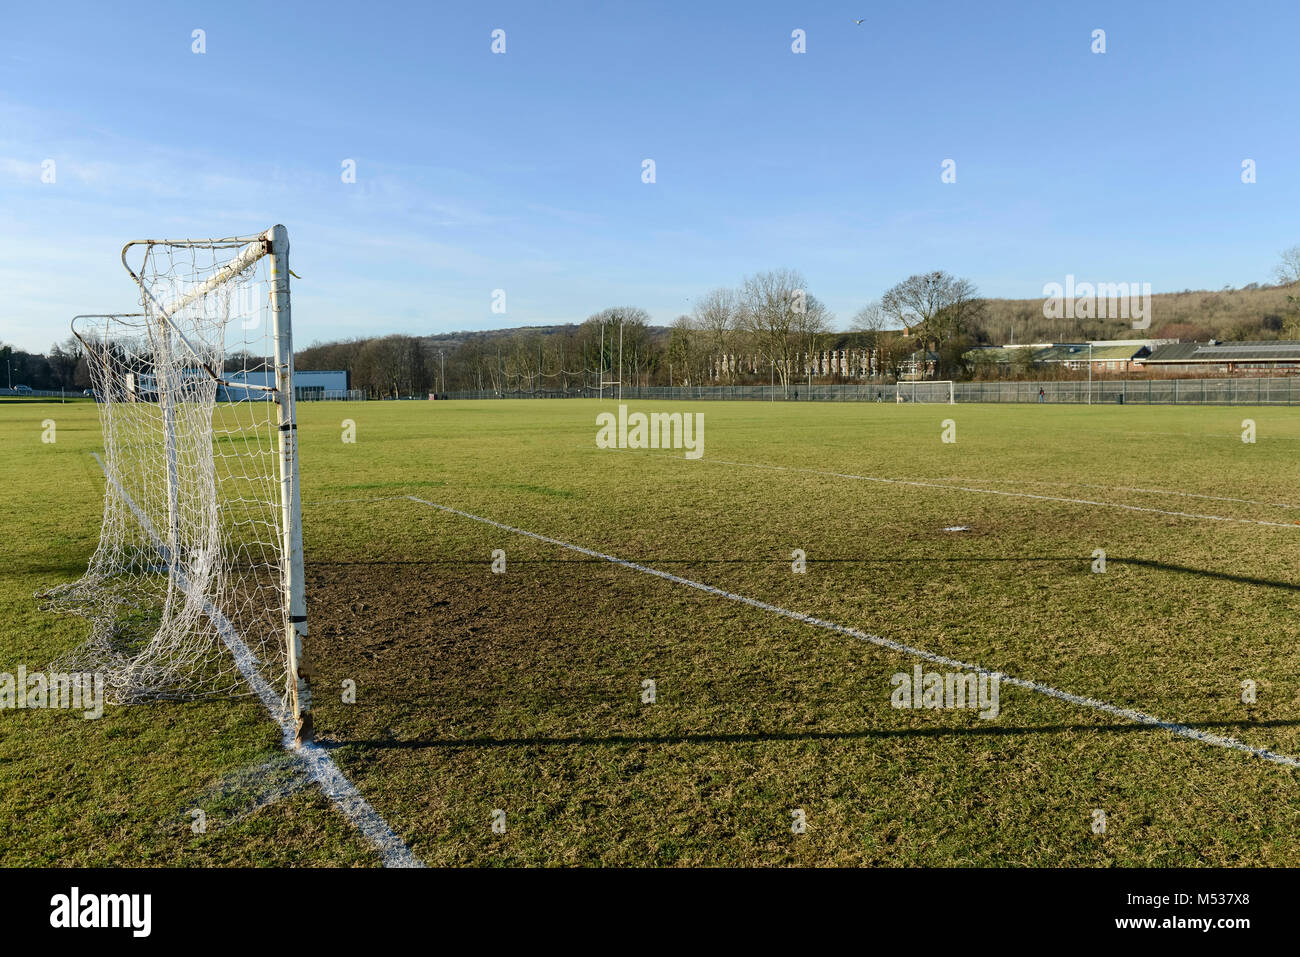 Escuela Deportiva y lanzamientos marcados para la práctica de deportes como el fútbol y el rugby con césped prolijamente cortado Foto de stock